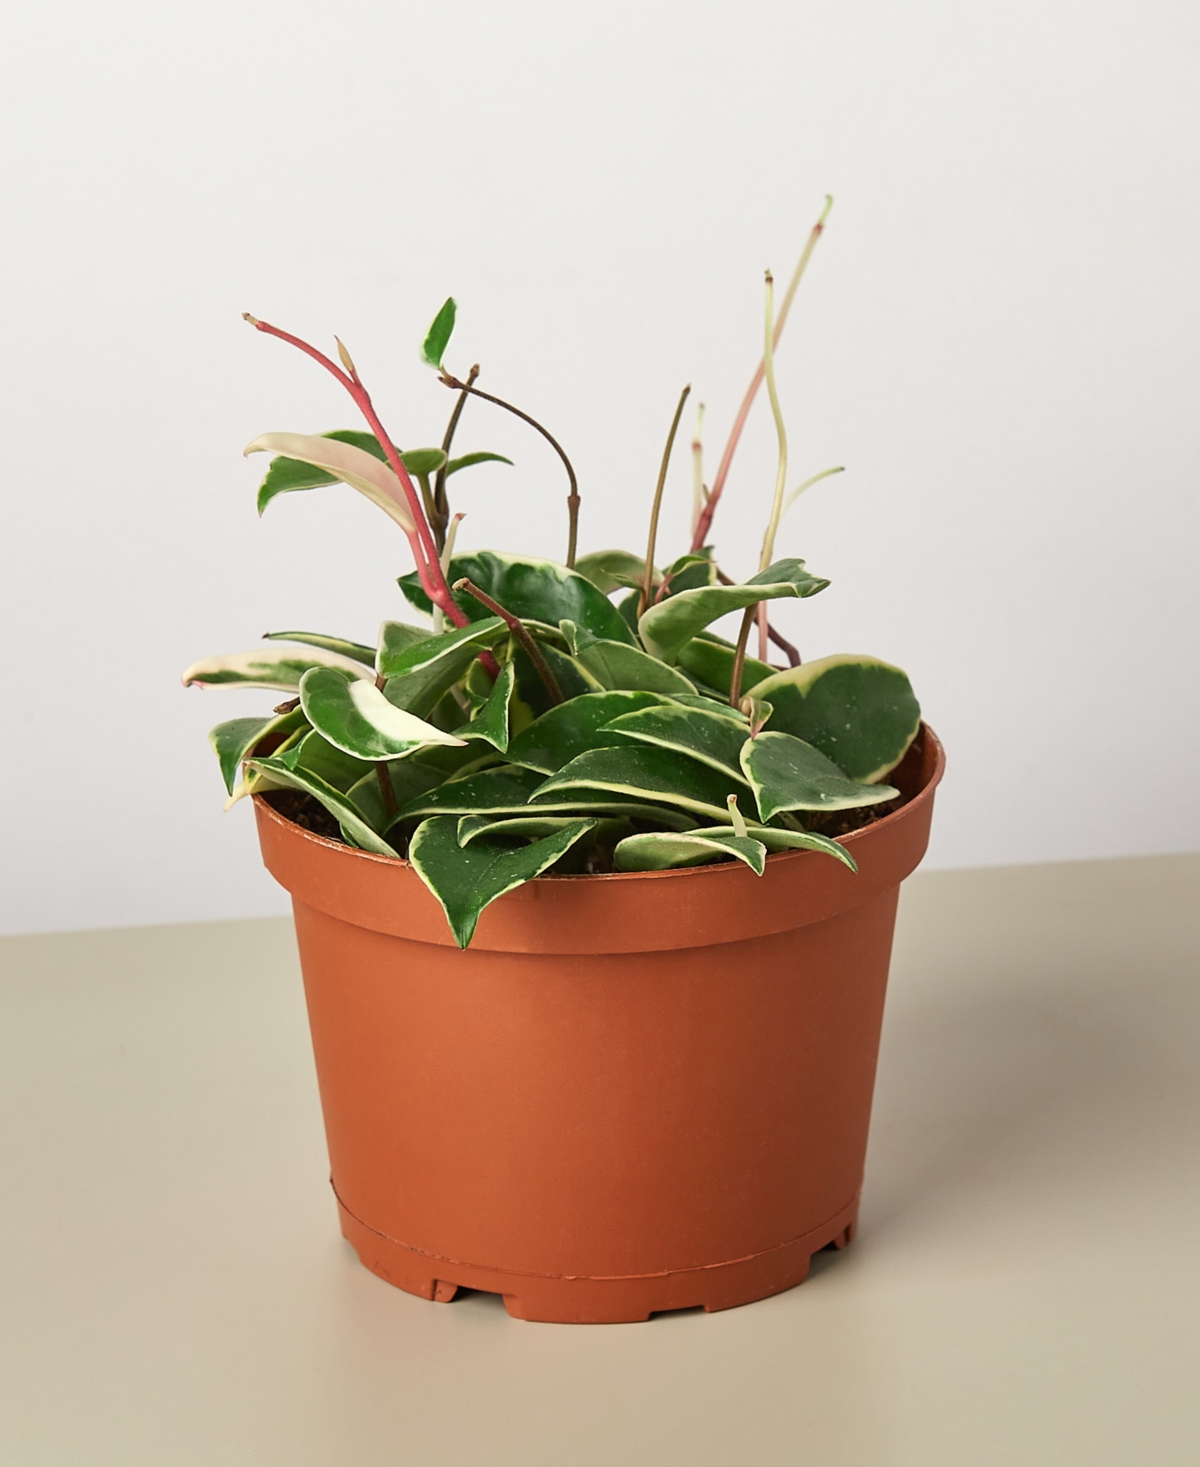 Tricolor Hoya Carnosa Wax Flower Live Plant, 6" Pot